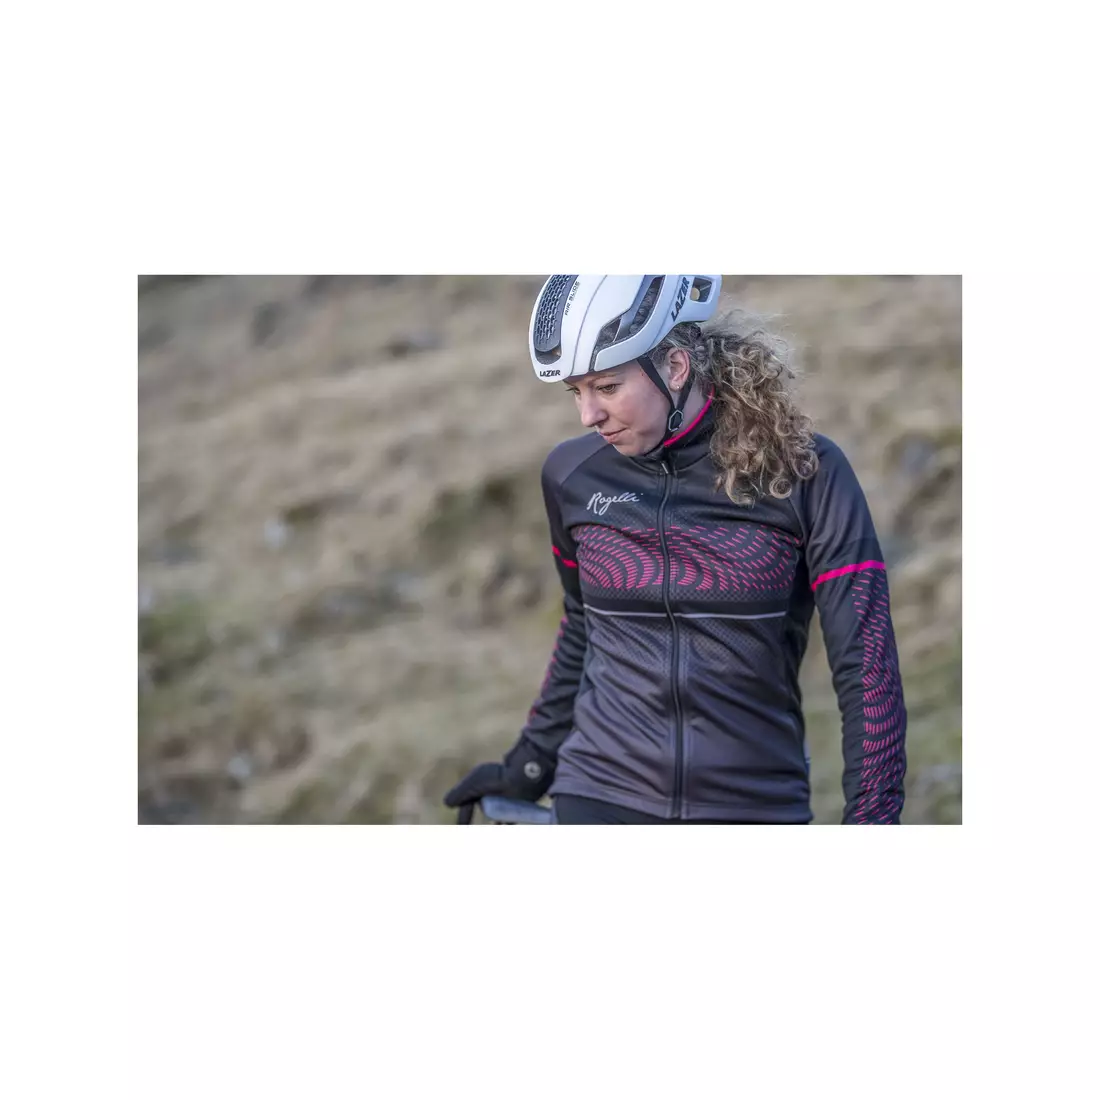 Dámská cyklistická bunda ROGELLI BELLA, lehce zateplená, černo-šedo-růžová